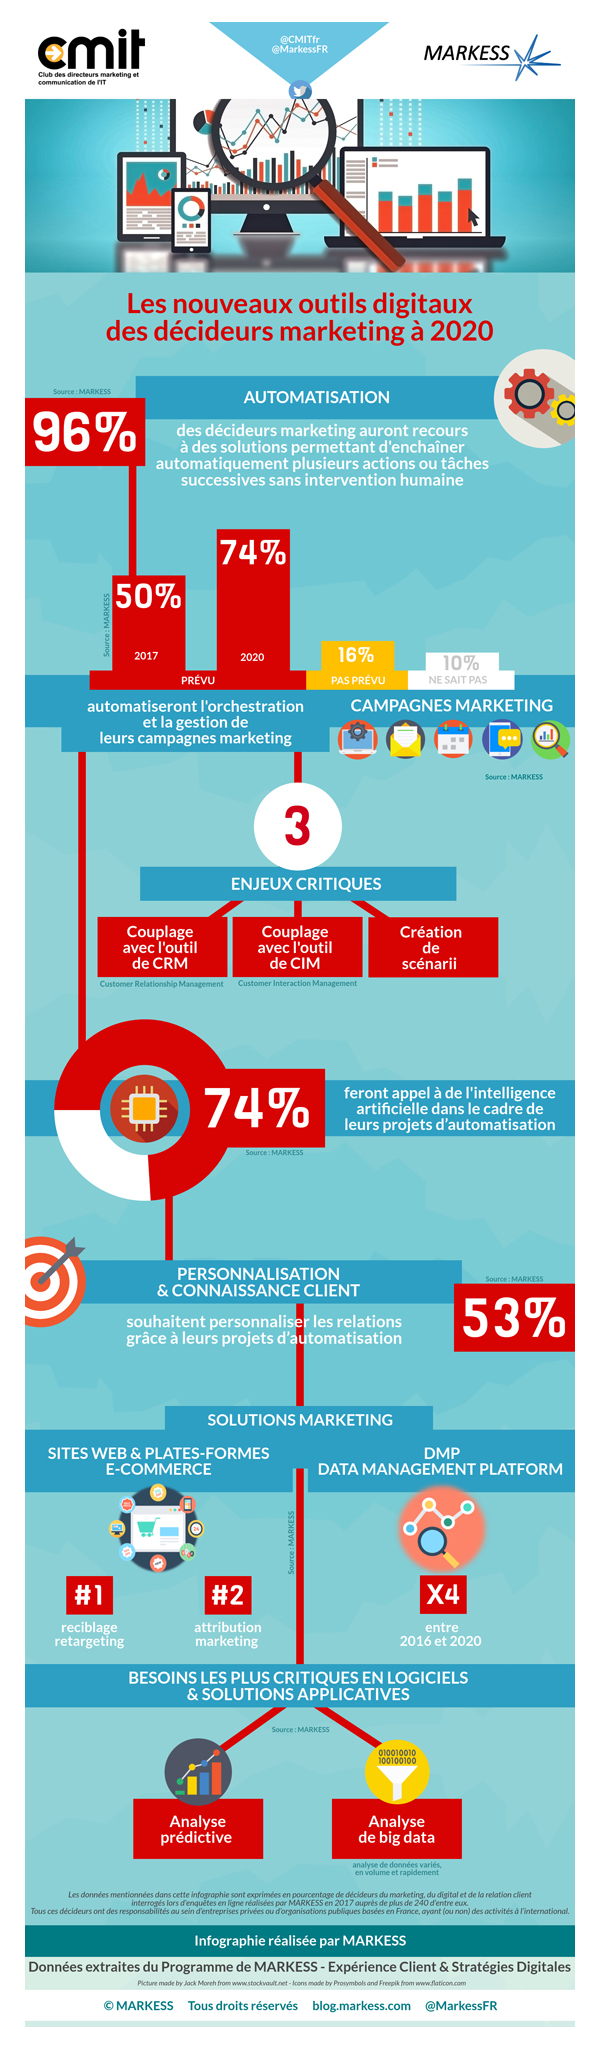 infographie CMIT_Markess_Les nouveaux outils digitaux des décideurs marketing à horizon 2020